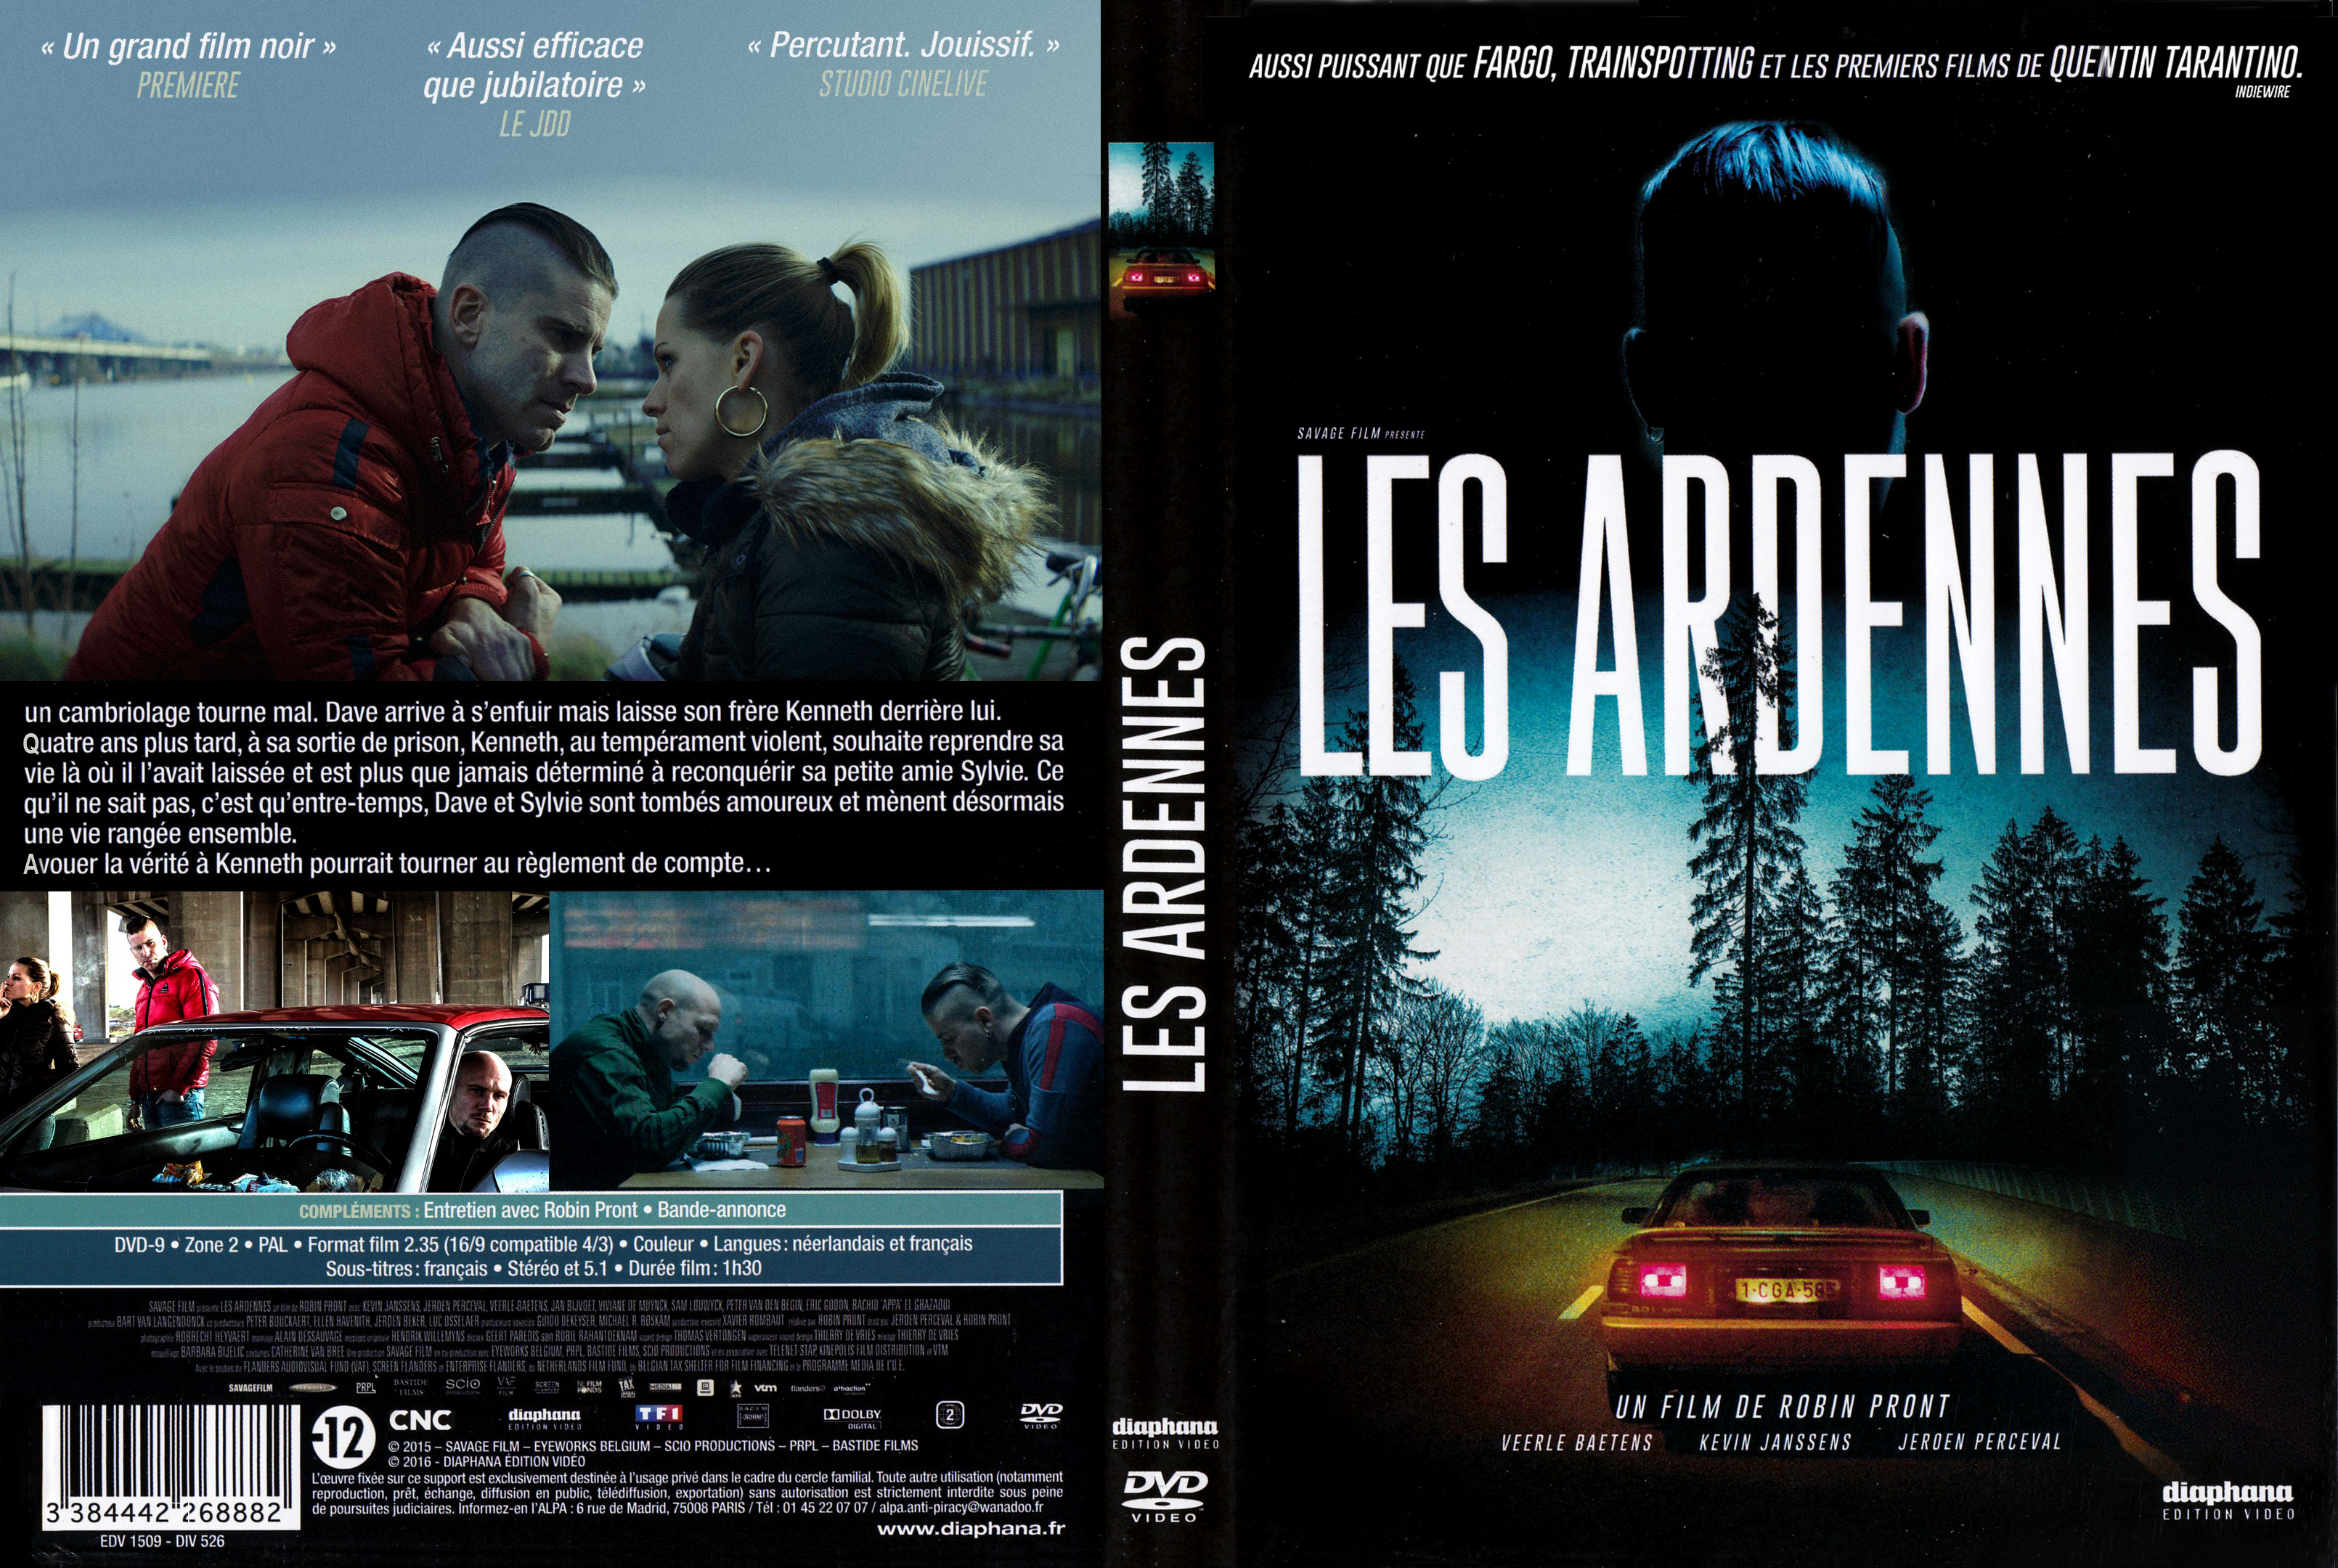 Jaquette DVD Les Ardennes